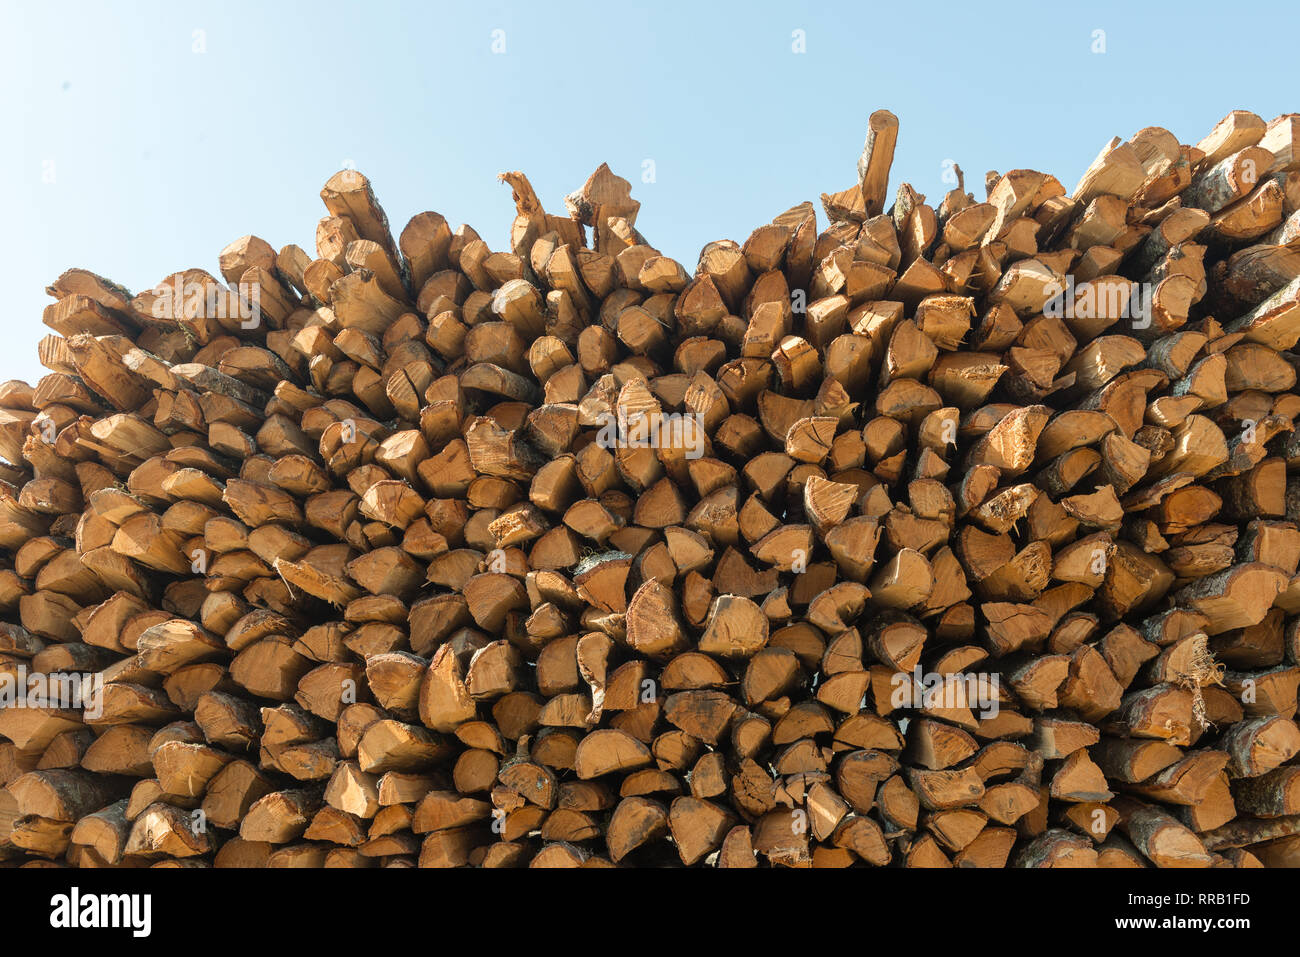 Brennholz Rundholz gestapelt auf einem Haufen, das Trocknen in der Sonne.  Natürliche Textur. Horizontale Komposition, Querschnitt Stockfotografie -  Alamy